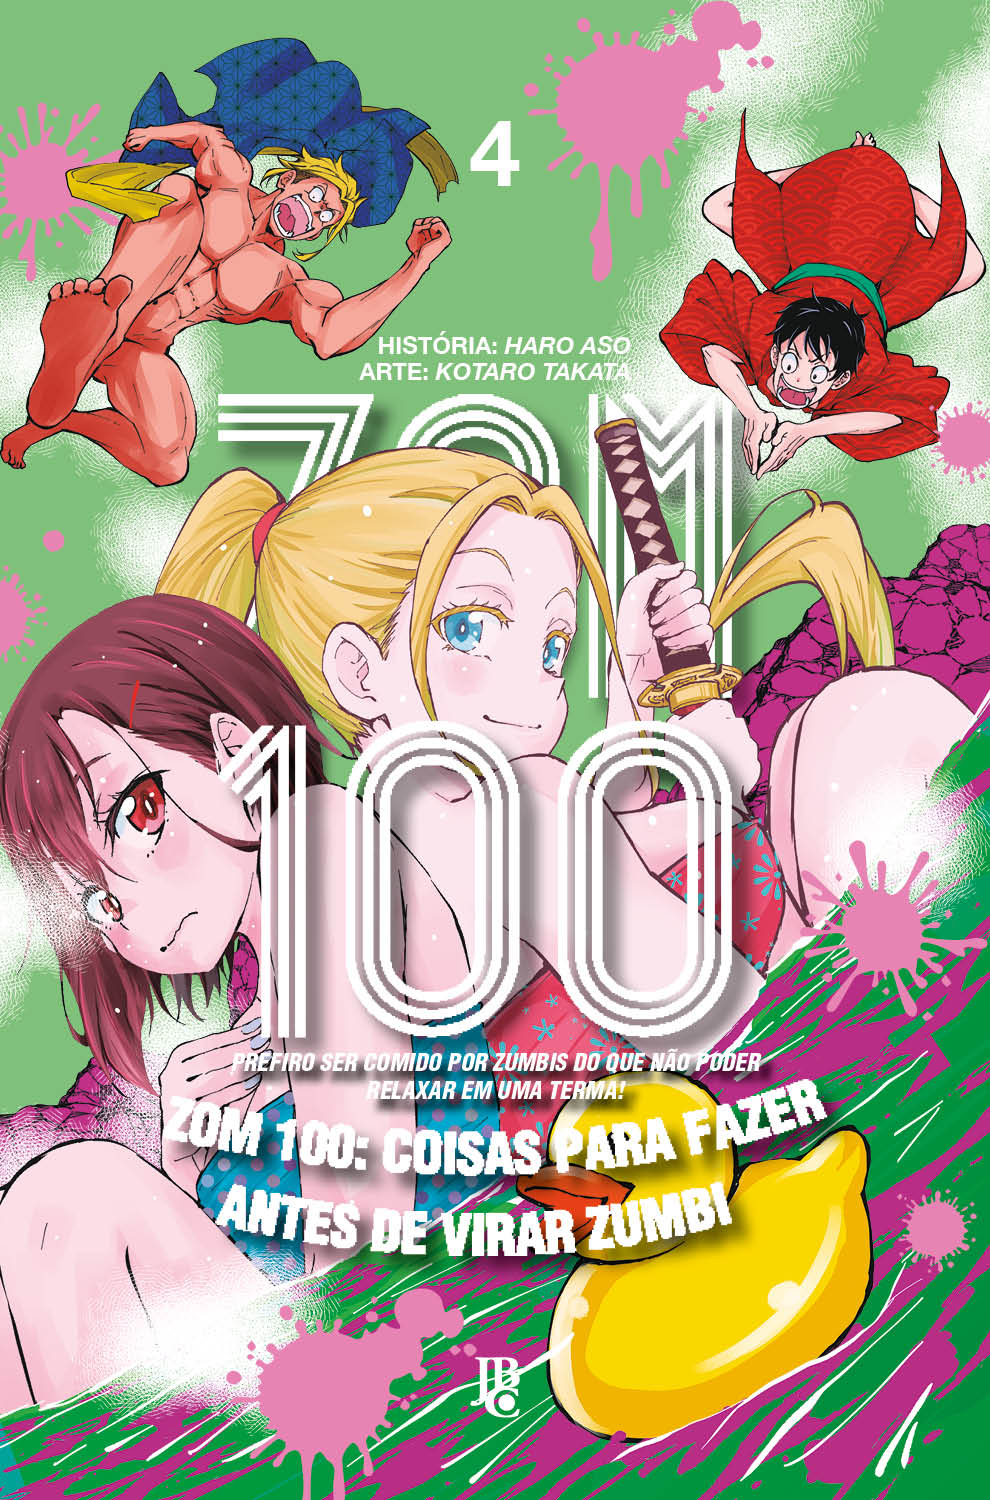 Conheça 100 Coisas para Fazer Antes de Virar Zumbi, filme baseado em anime